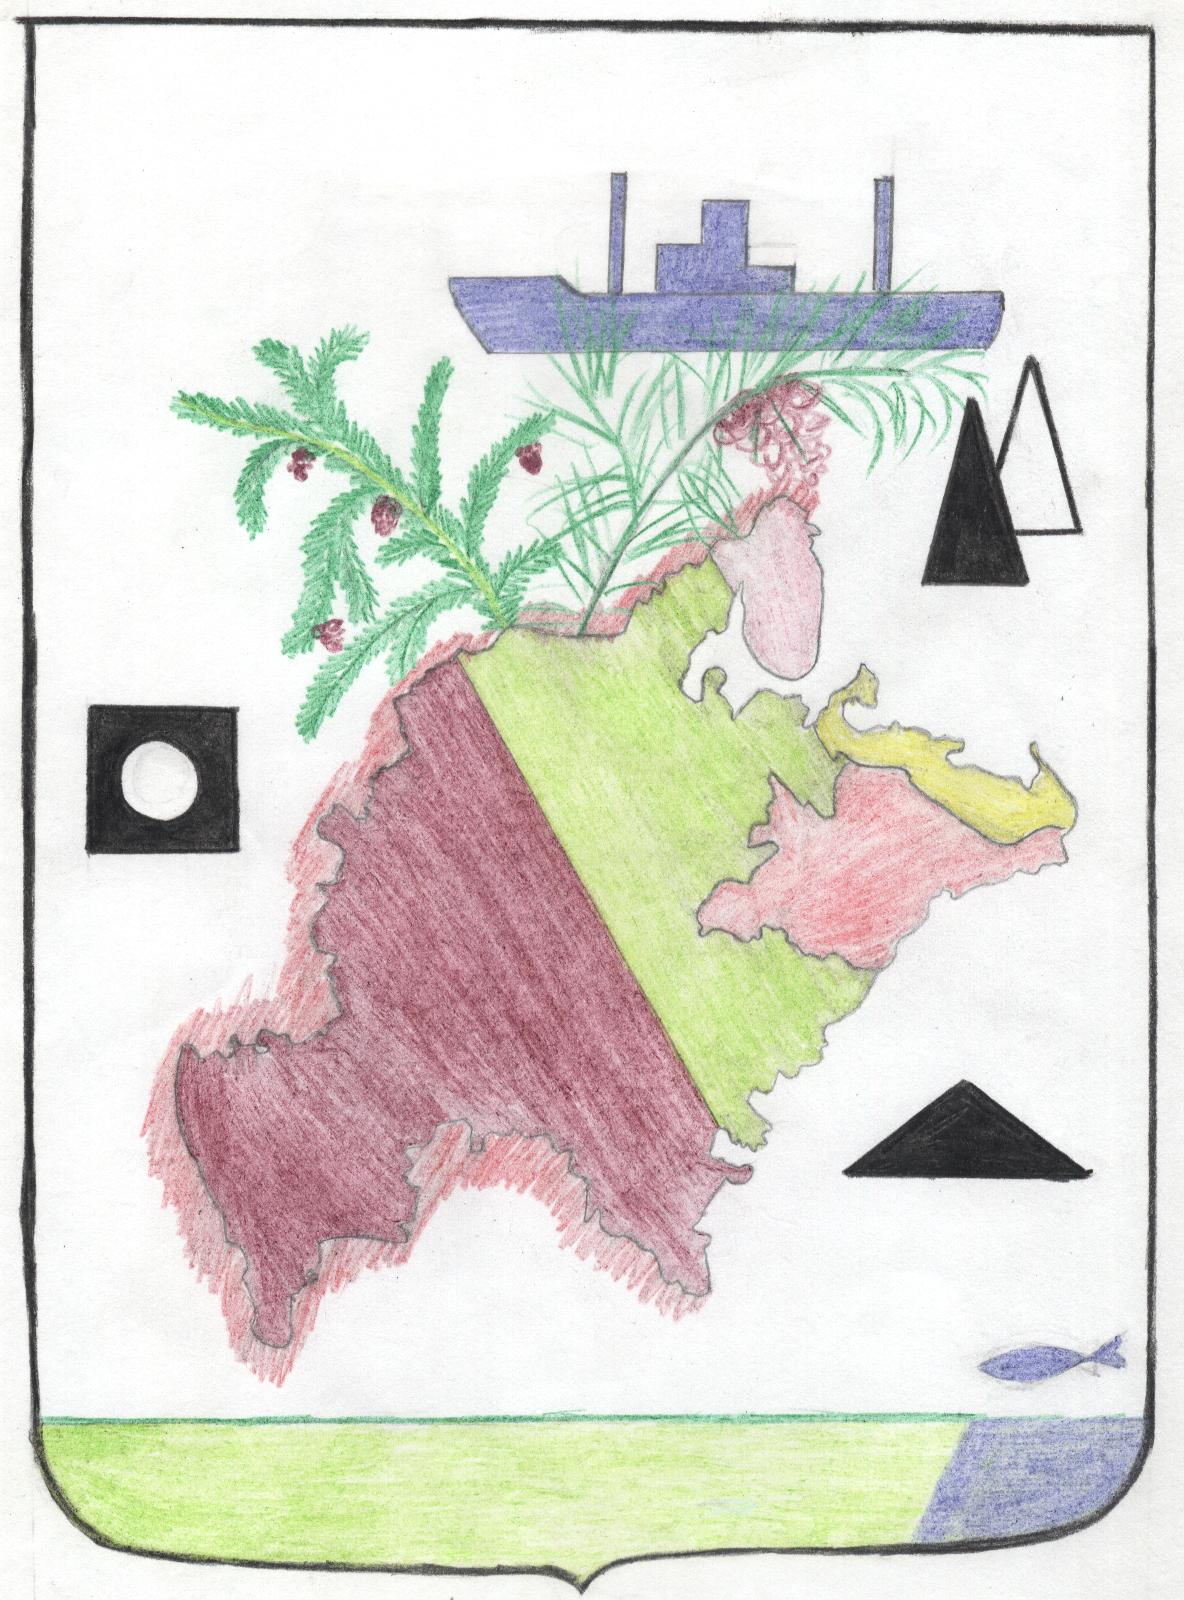 Урок по географии для 9 класса «Создание образа экономического района через условный герб»